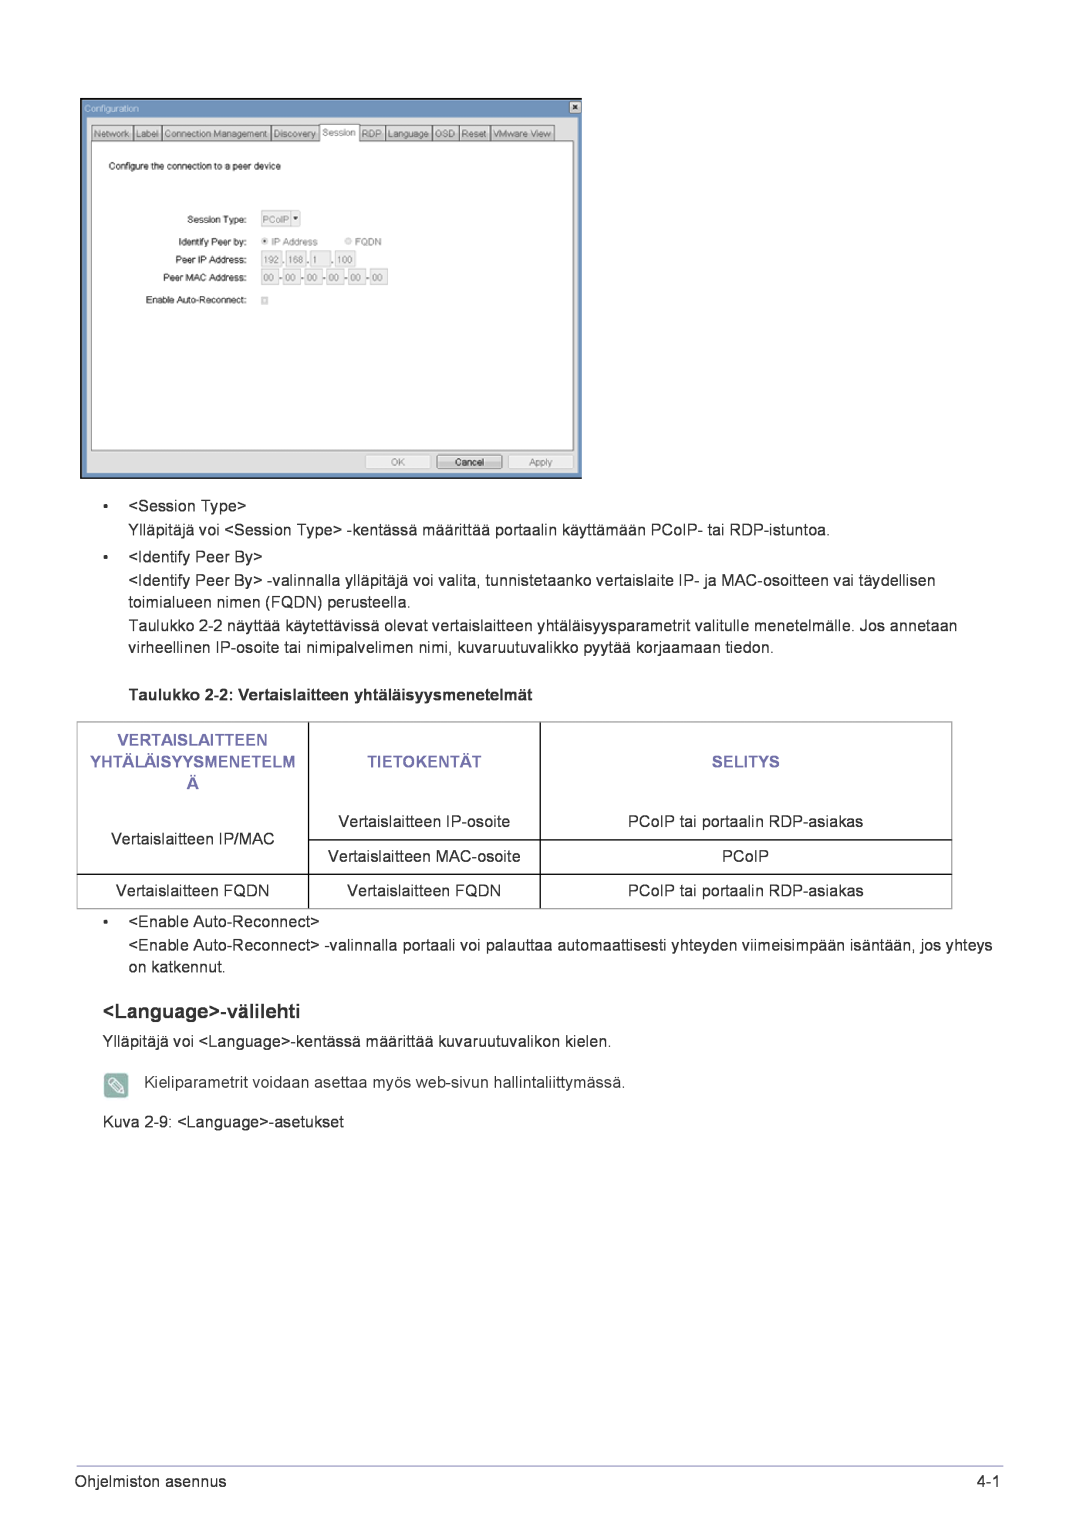 Samsung LF22NPBHBNP/EN manual Language-välilehti, Vertaislaitteen, Yhtäläisyysmenetelm, Selitys, Tietokentät 